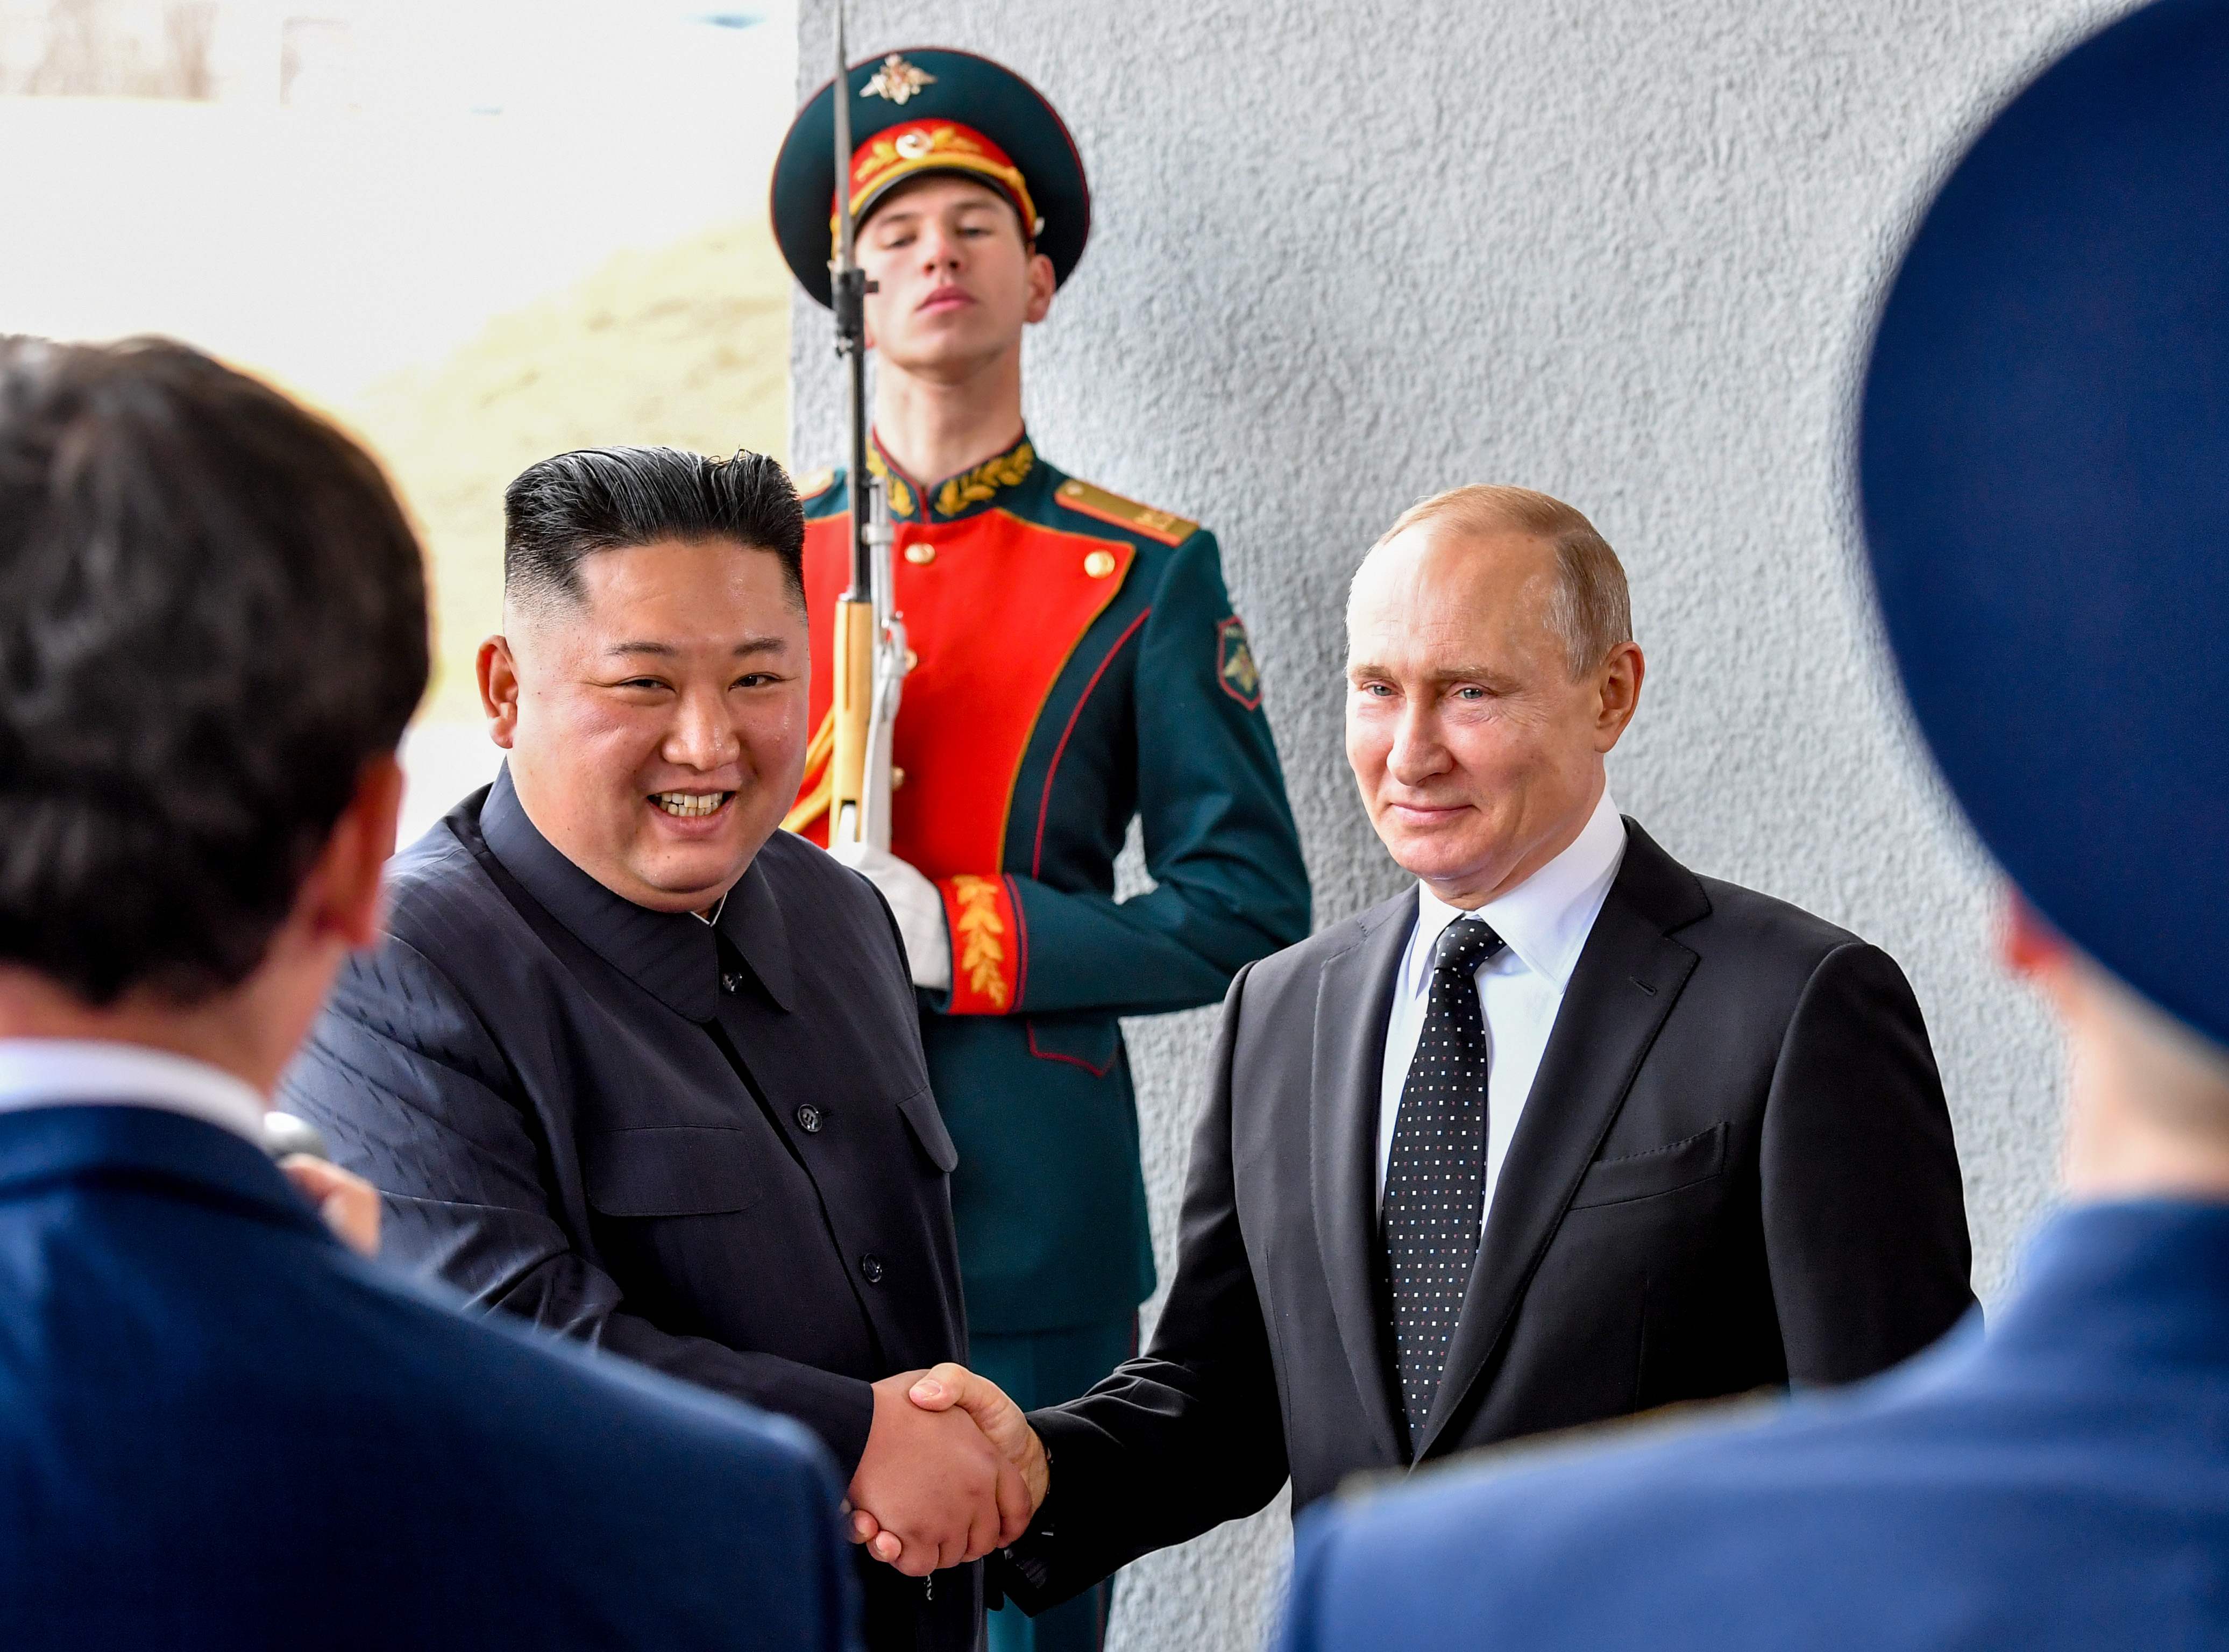 Histórico apretón de manos entre el líder norcoreano y el presidente ruso. (Foto Prensa Libre: AFP)